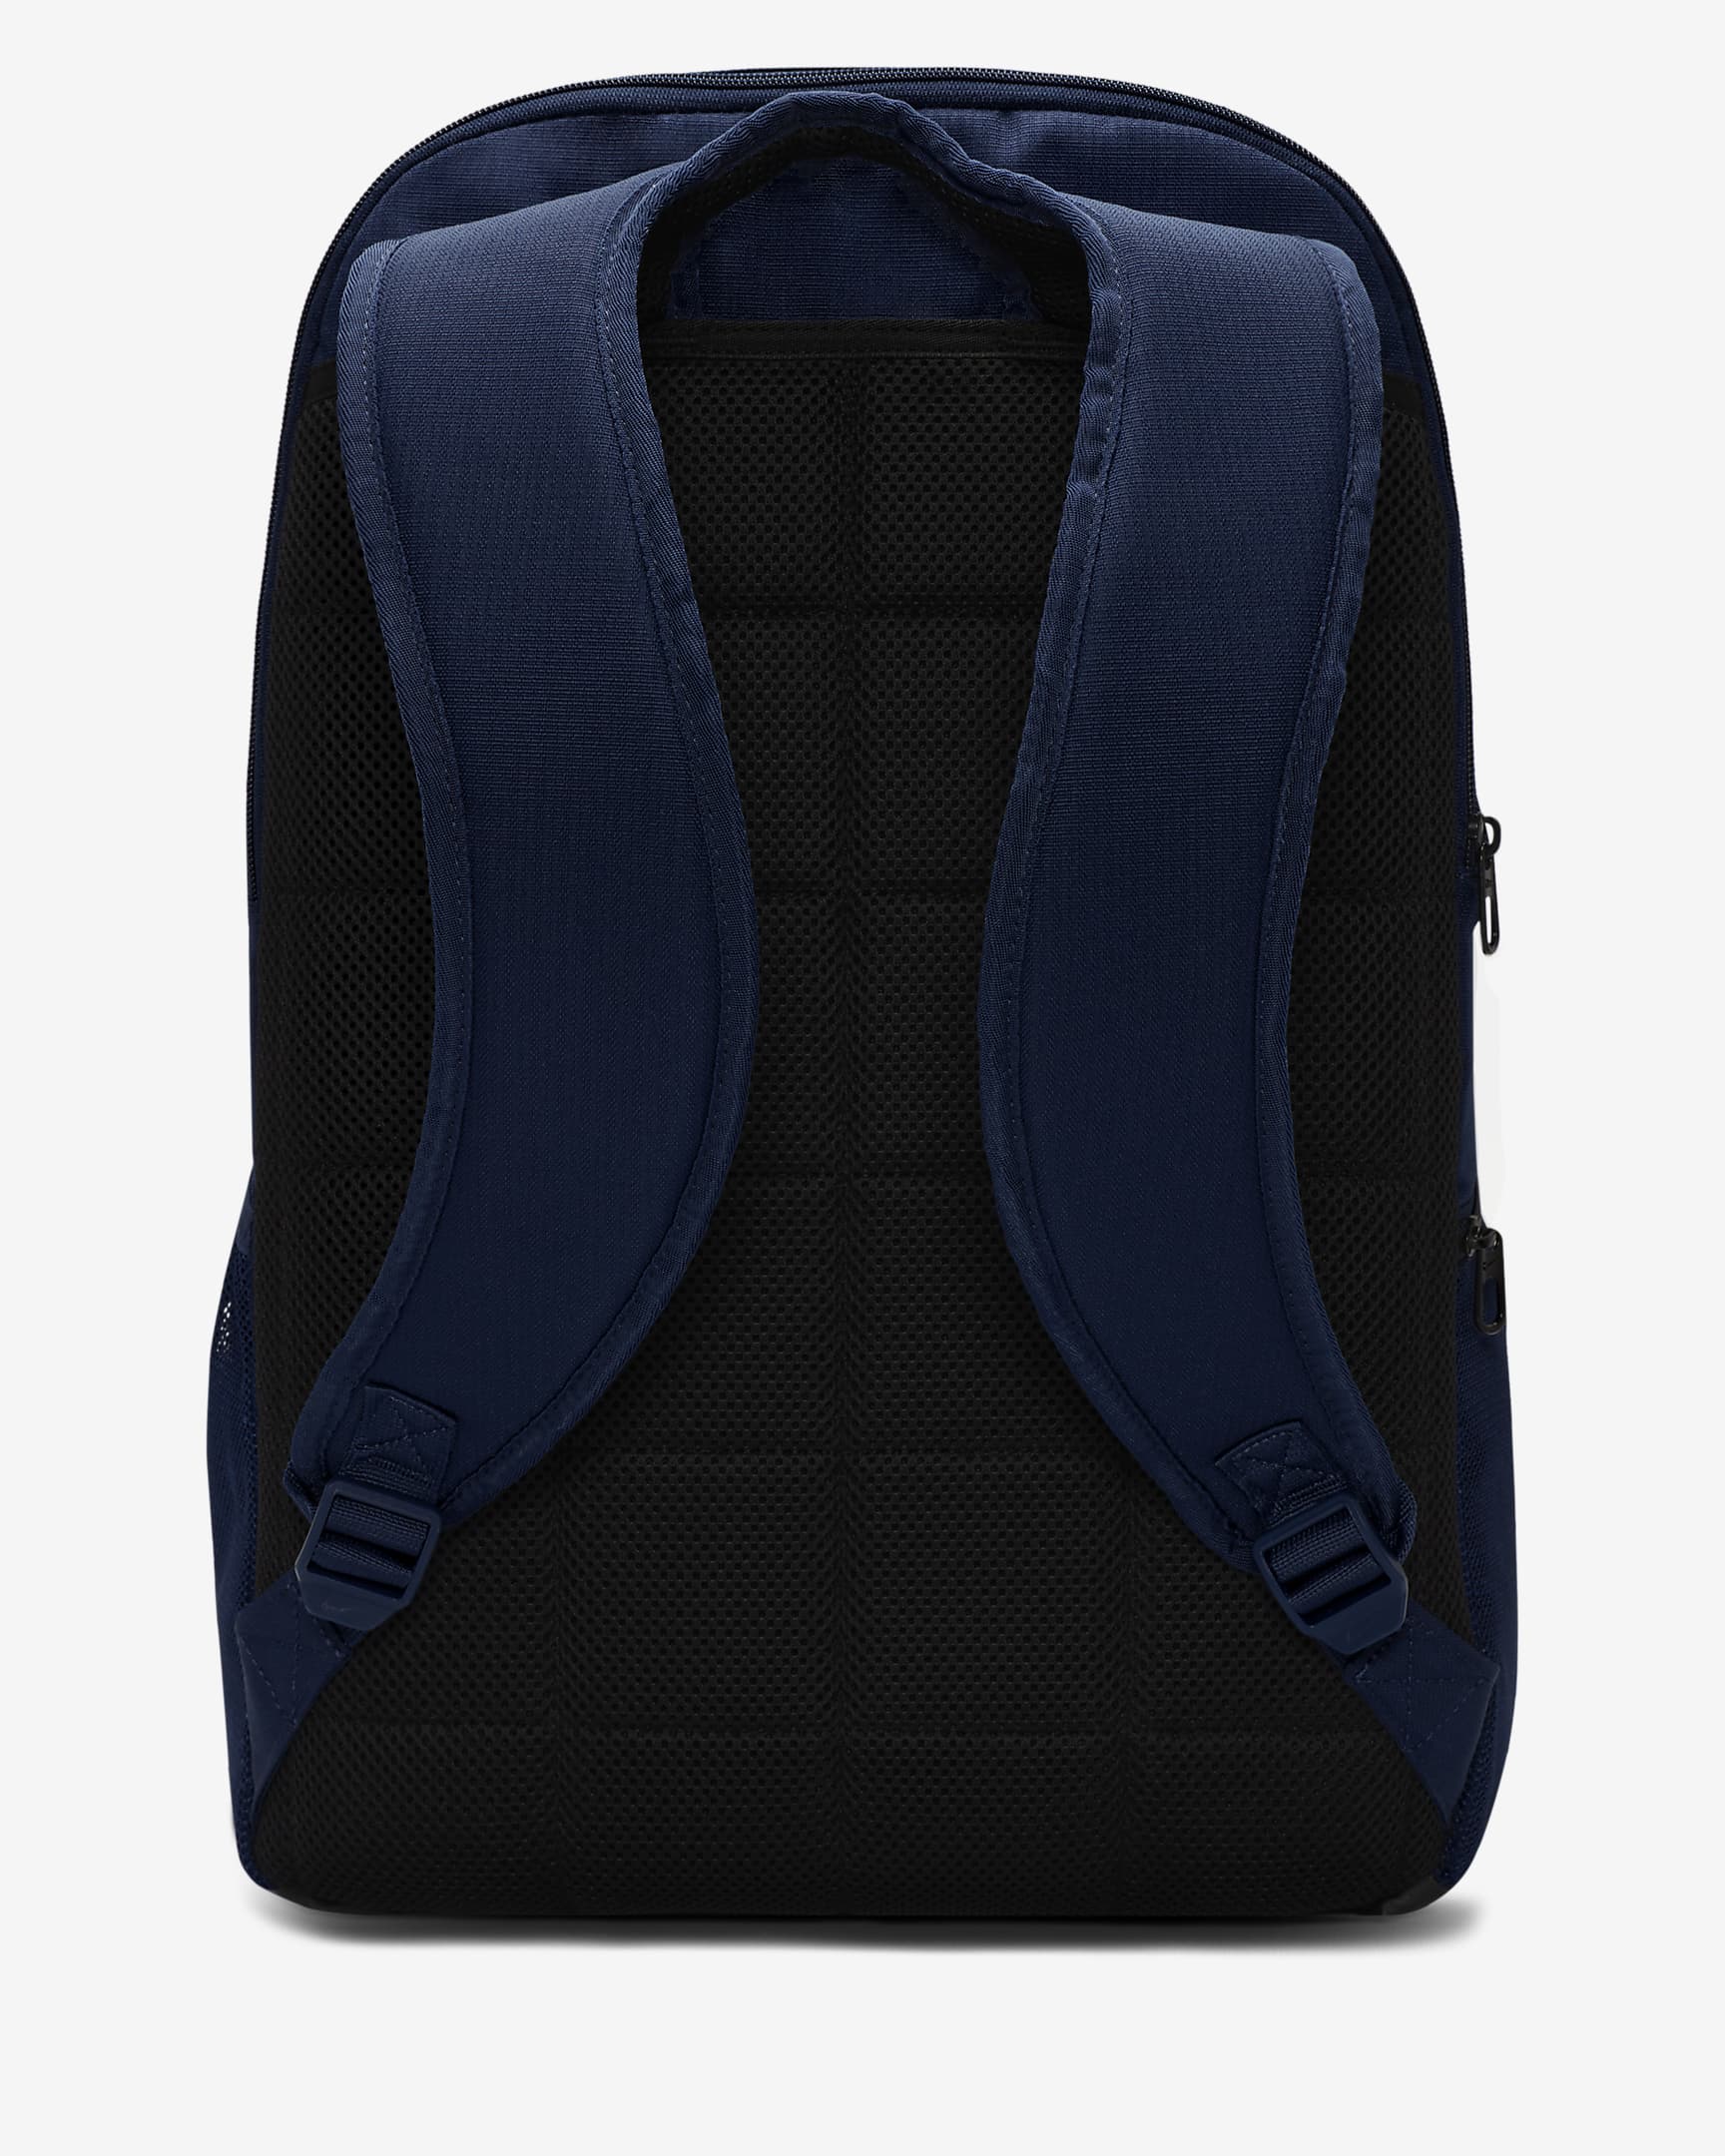 Nike Brasilia 9.5 Training Backpack (Extra Large, 30L). Nike.com